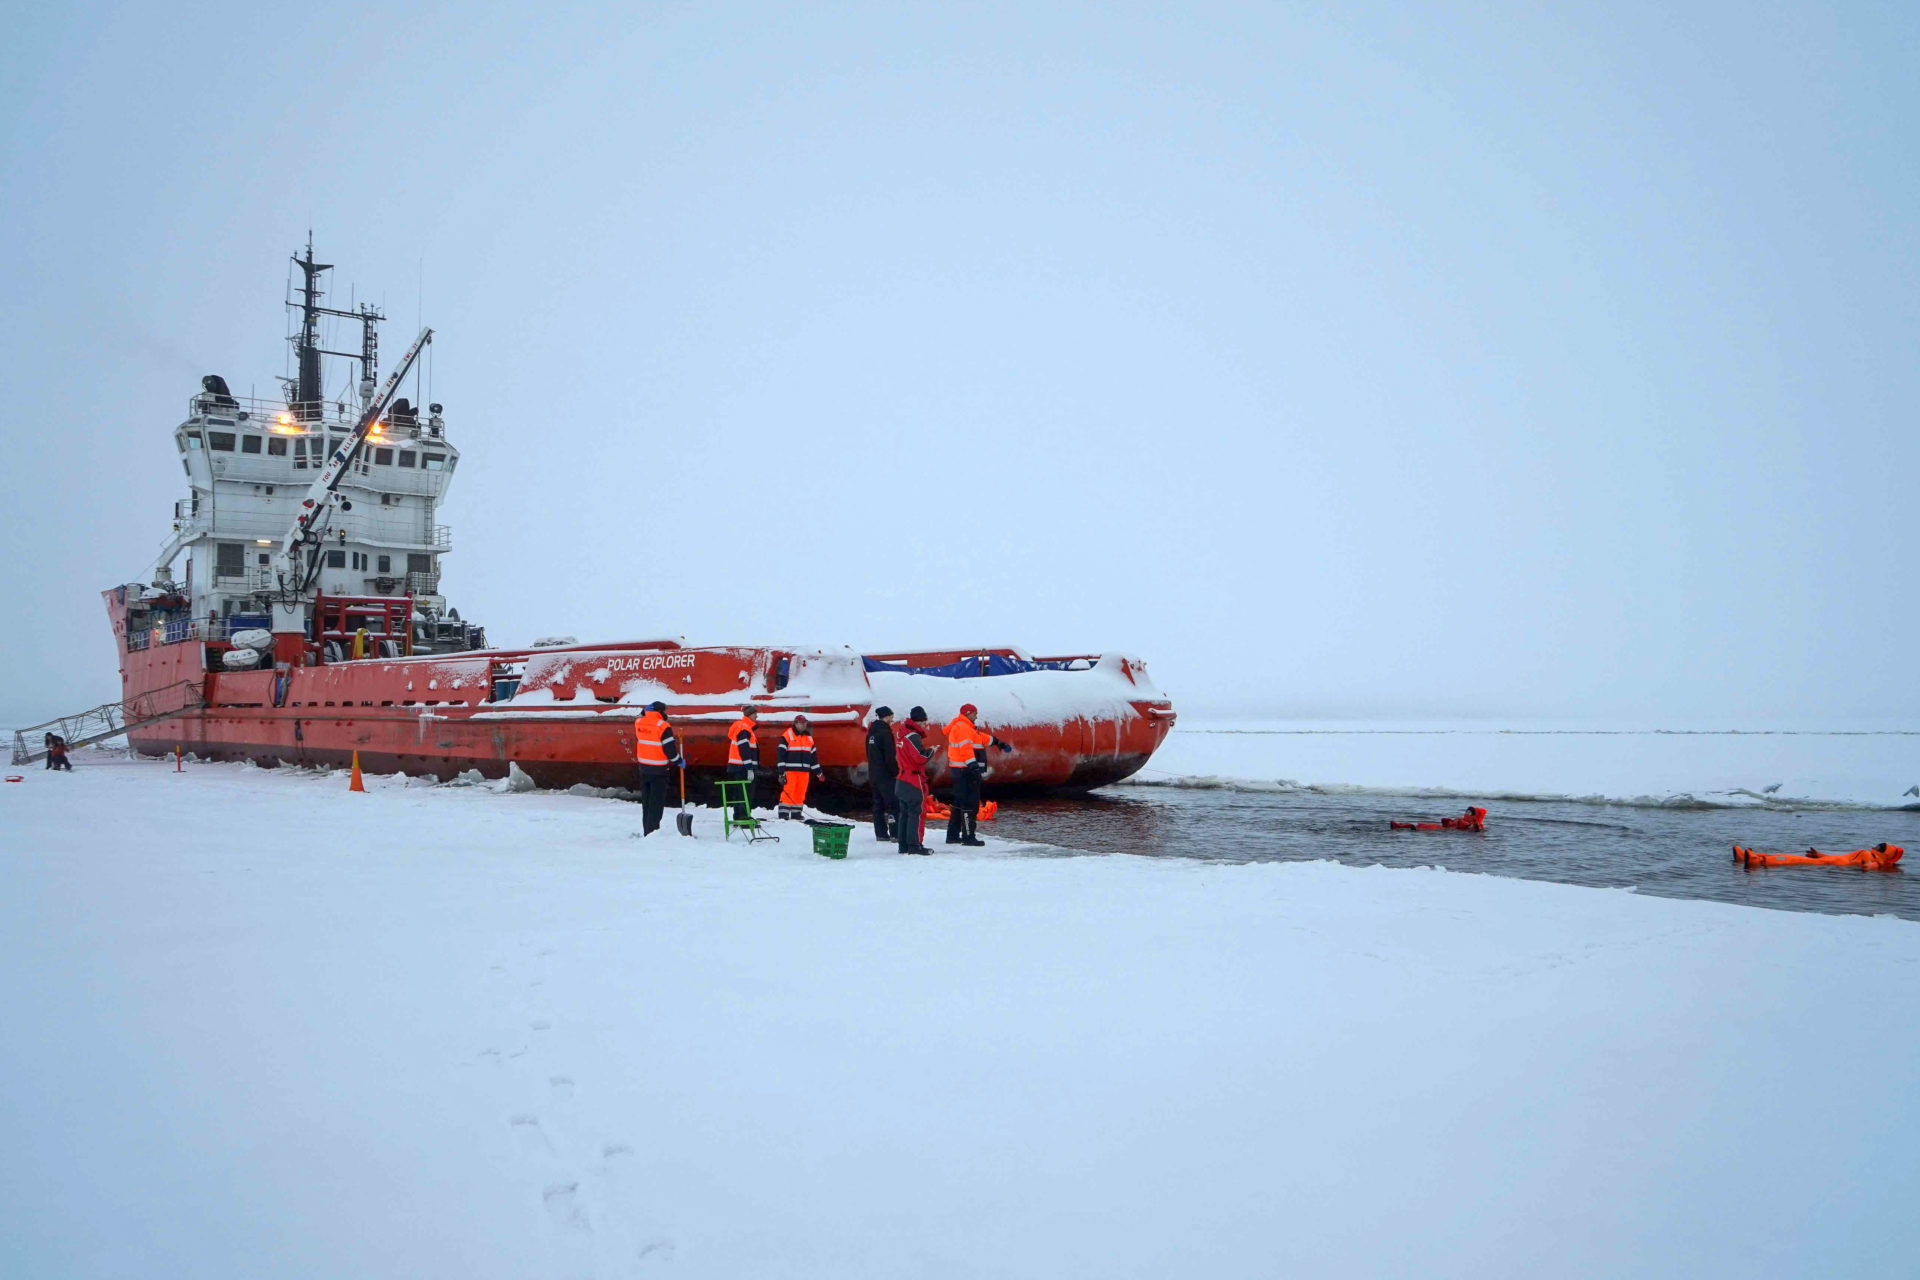 Die Polar Explorer hält in der Fahrrinne, um den Gästen an Bord ein Bad im Eiswasser zu gestatten